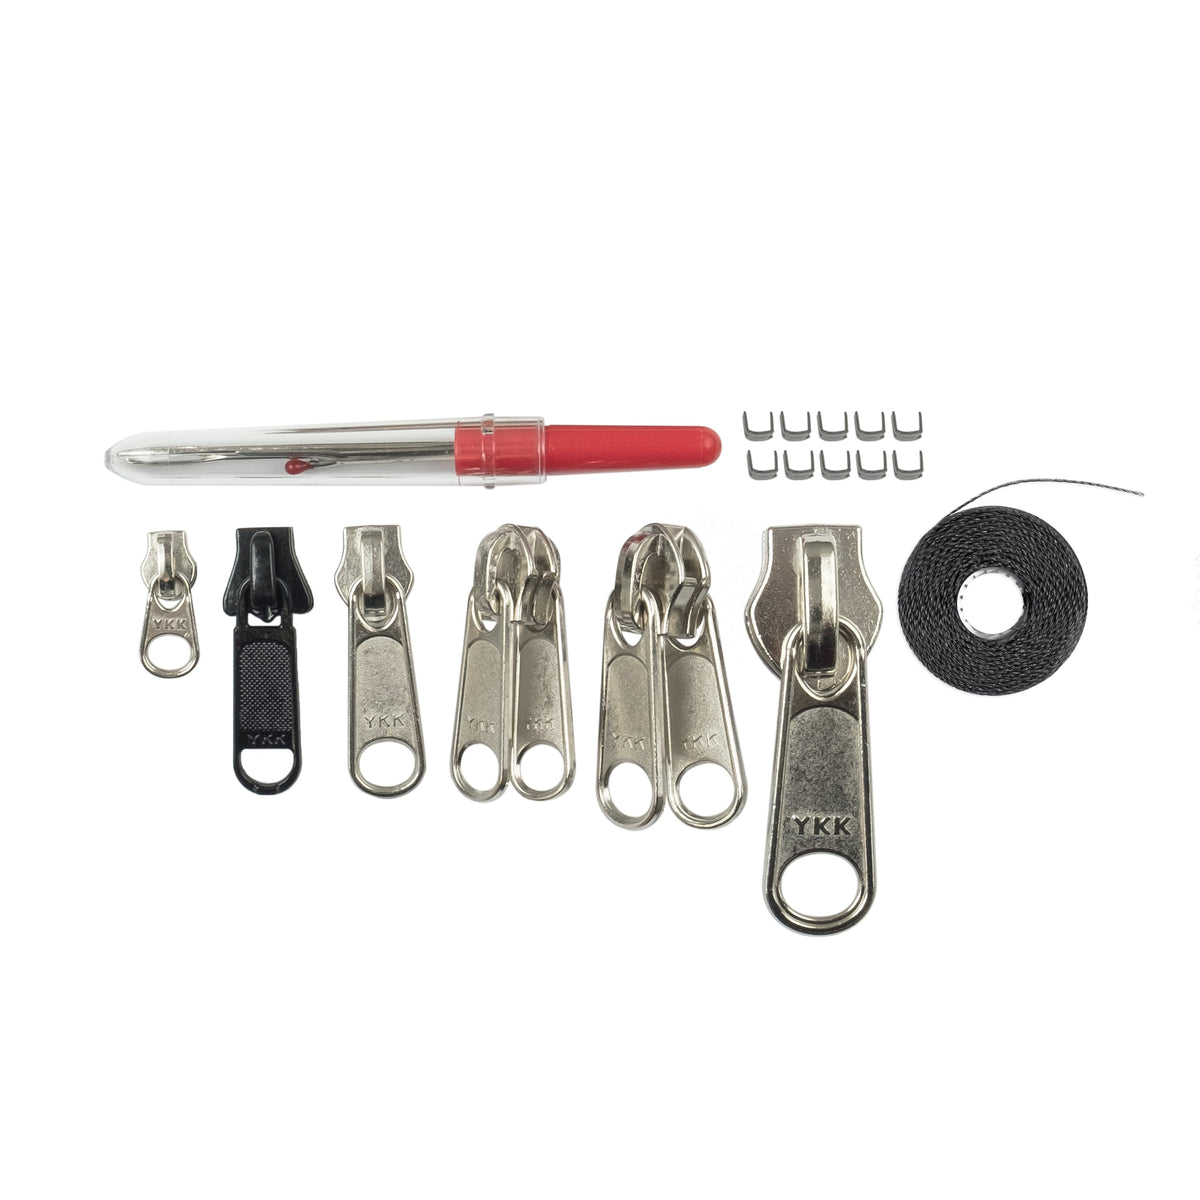 GEAR AID - Zipper Repair Kit